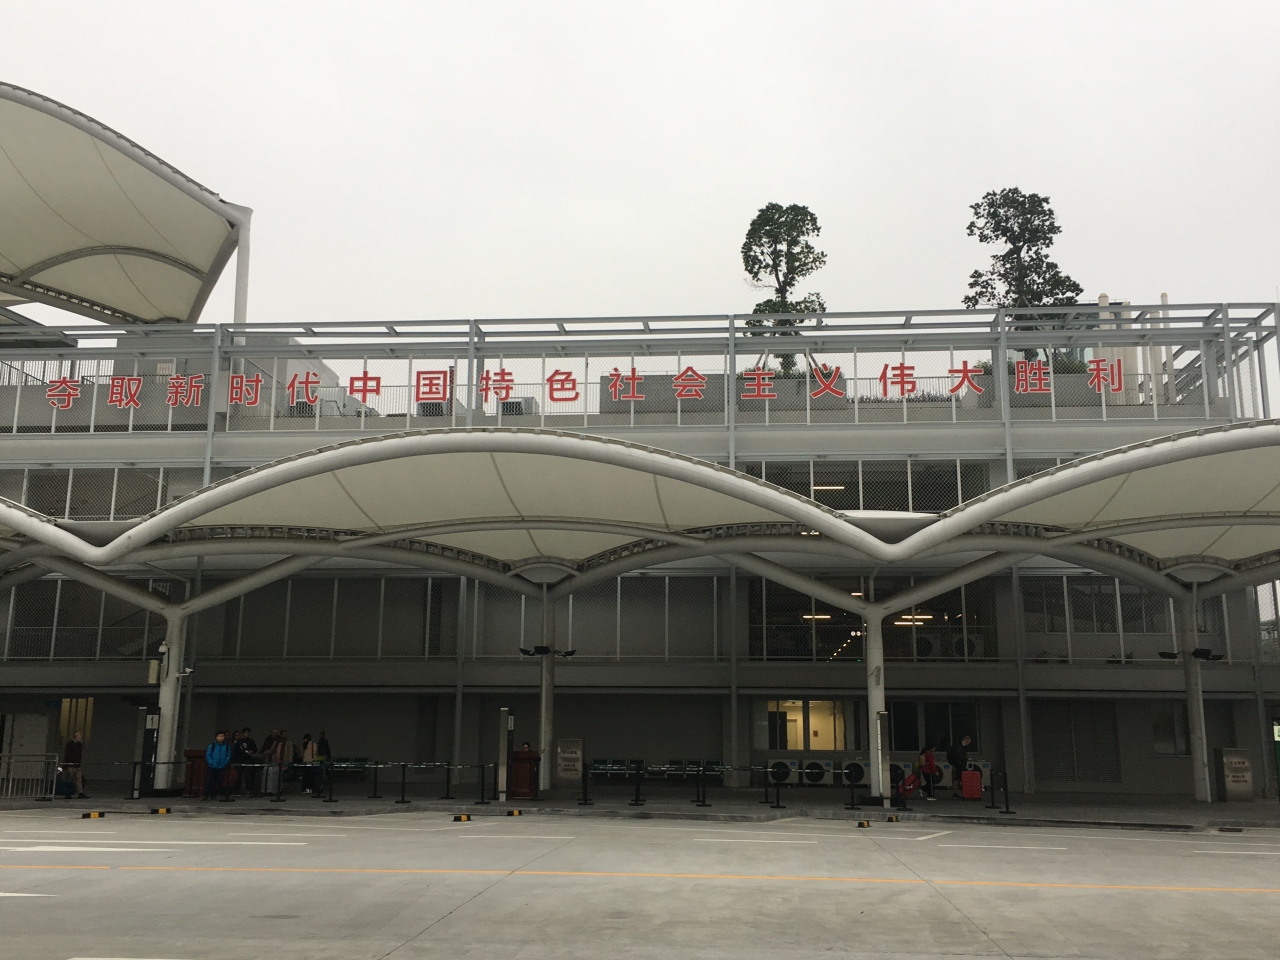 広州白雲国際空港 (CAN)                Guangzhou Baiyun International Airport